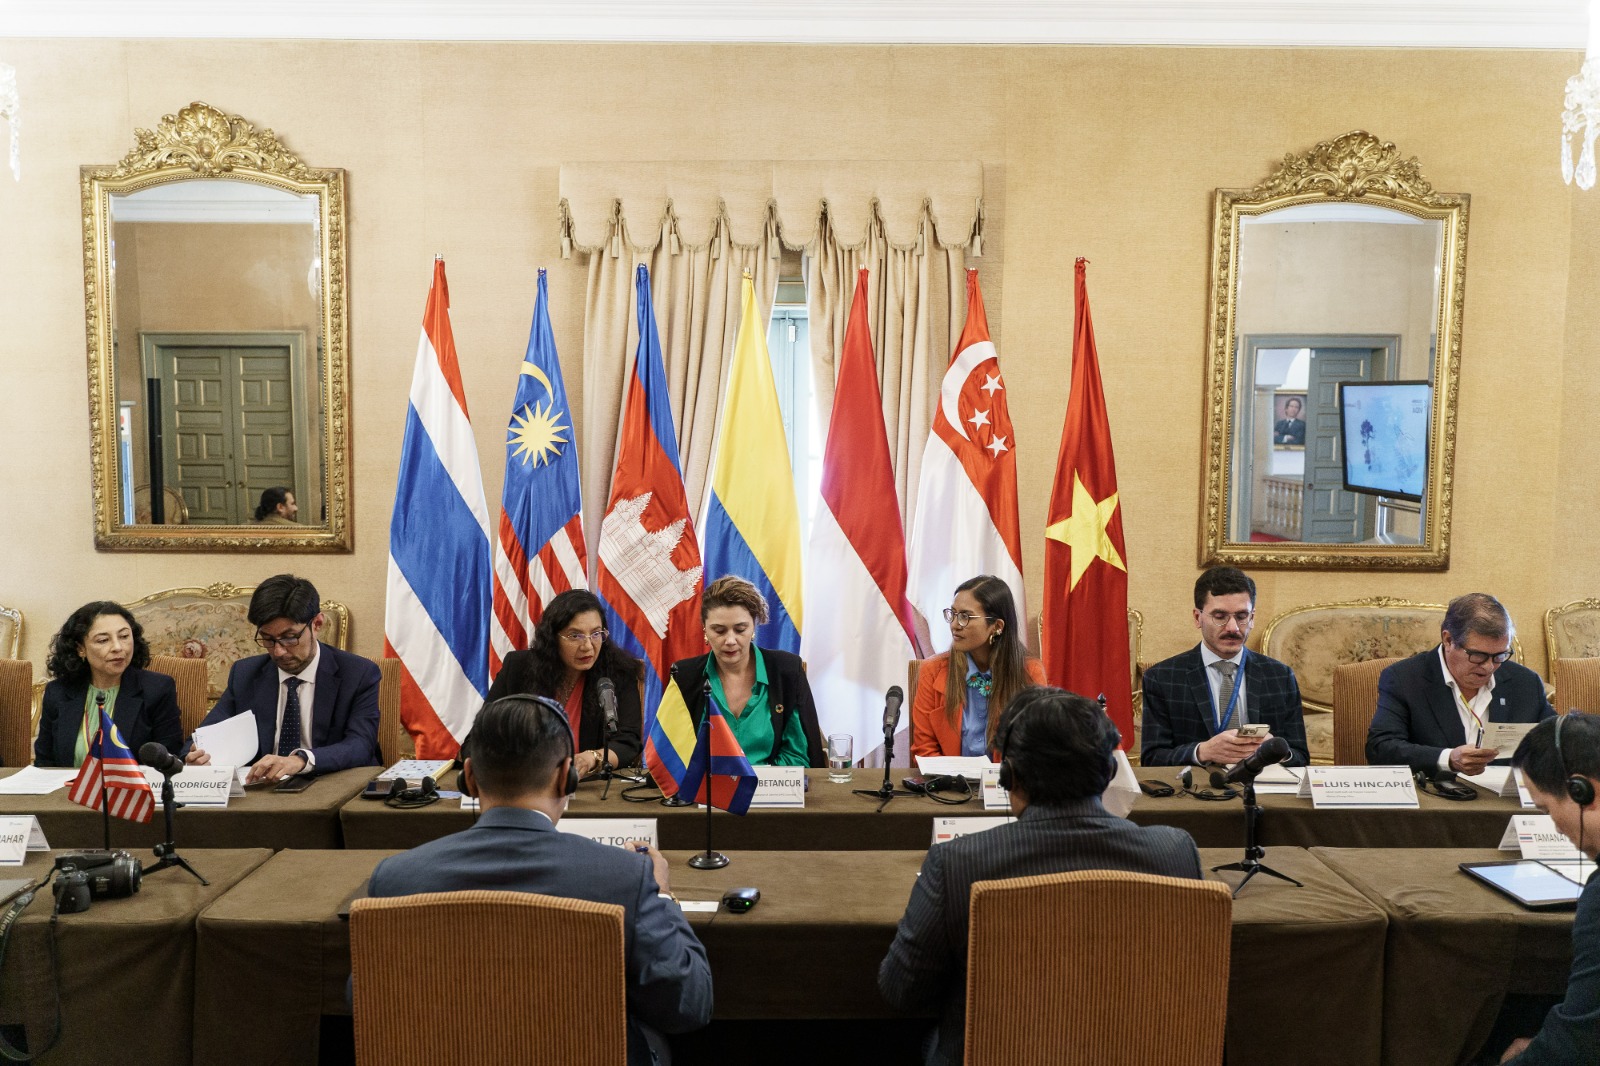 Clausura de la visita de campo de representantes de la Asociación de Naciones del Sudeste Asiático (ASEAN) a Colombia en el marco del proyecto de cooperación denominado: Curso sobre manejo de Carbono Azul para países ASEAN